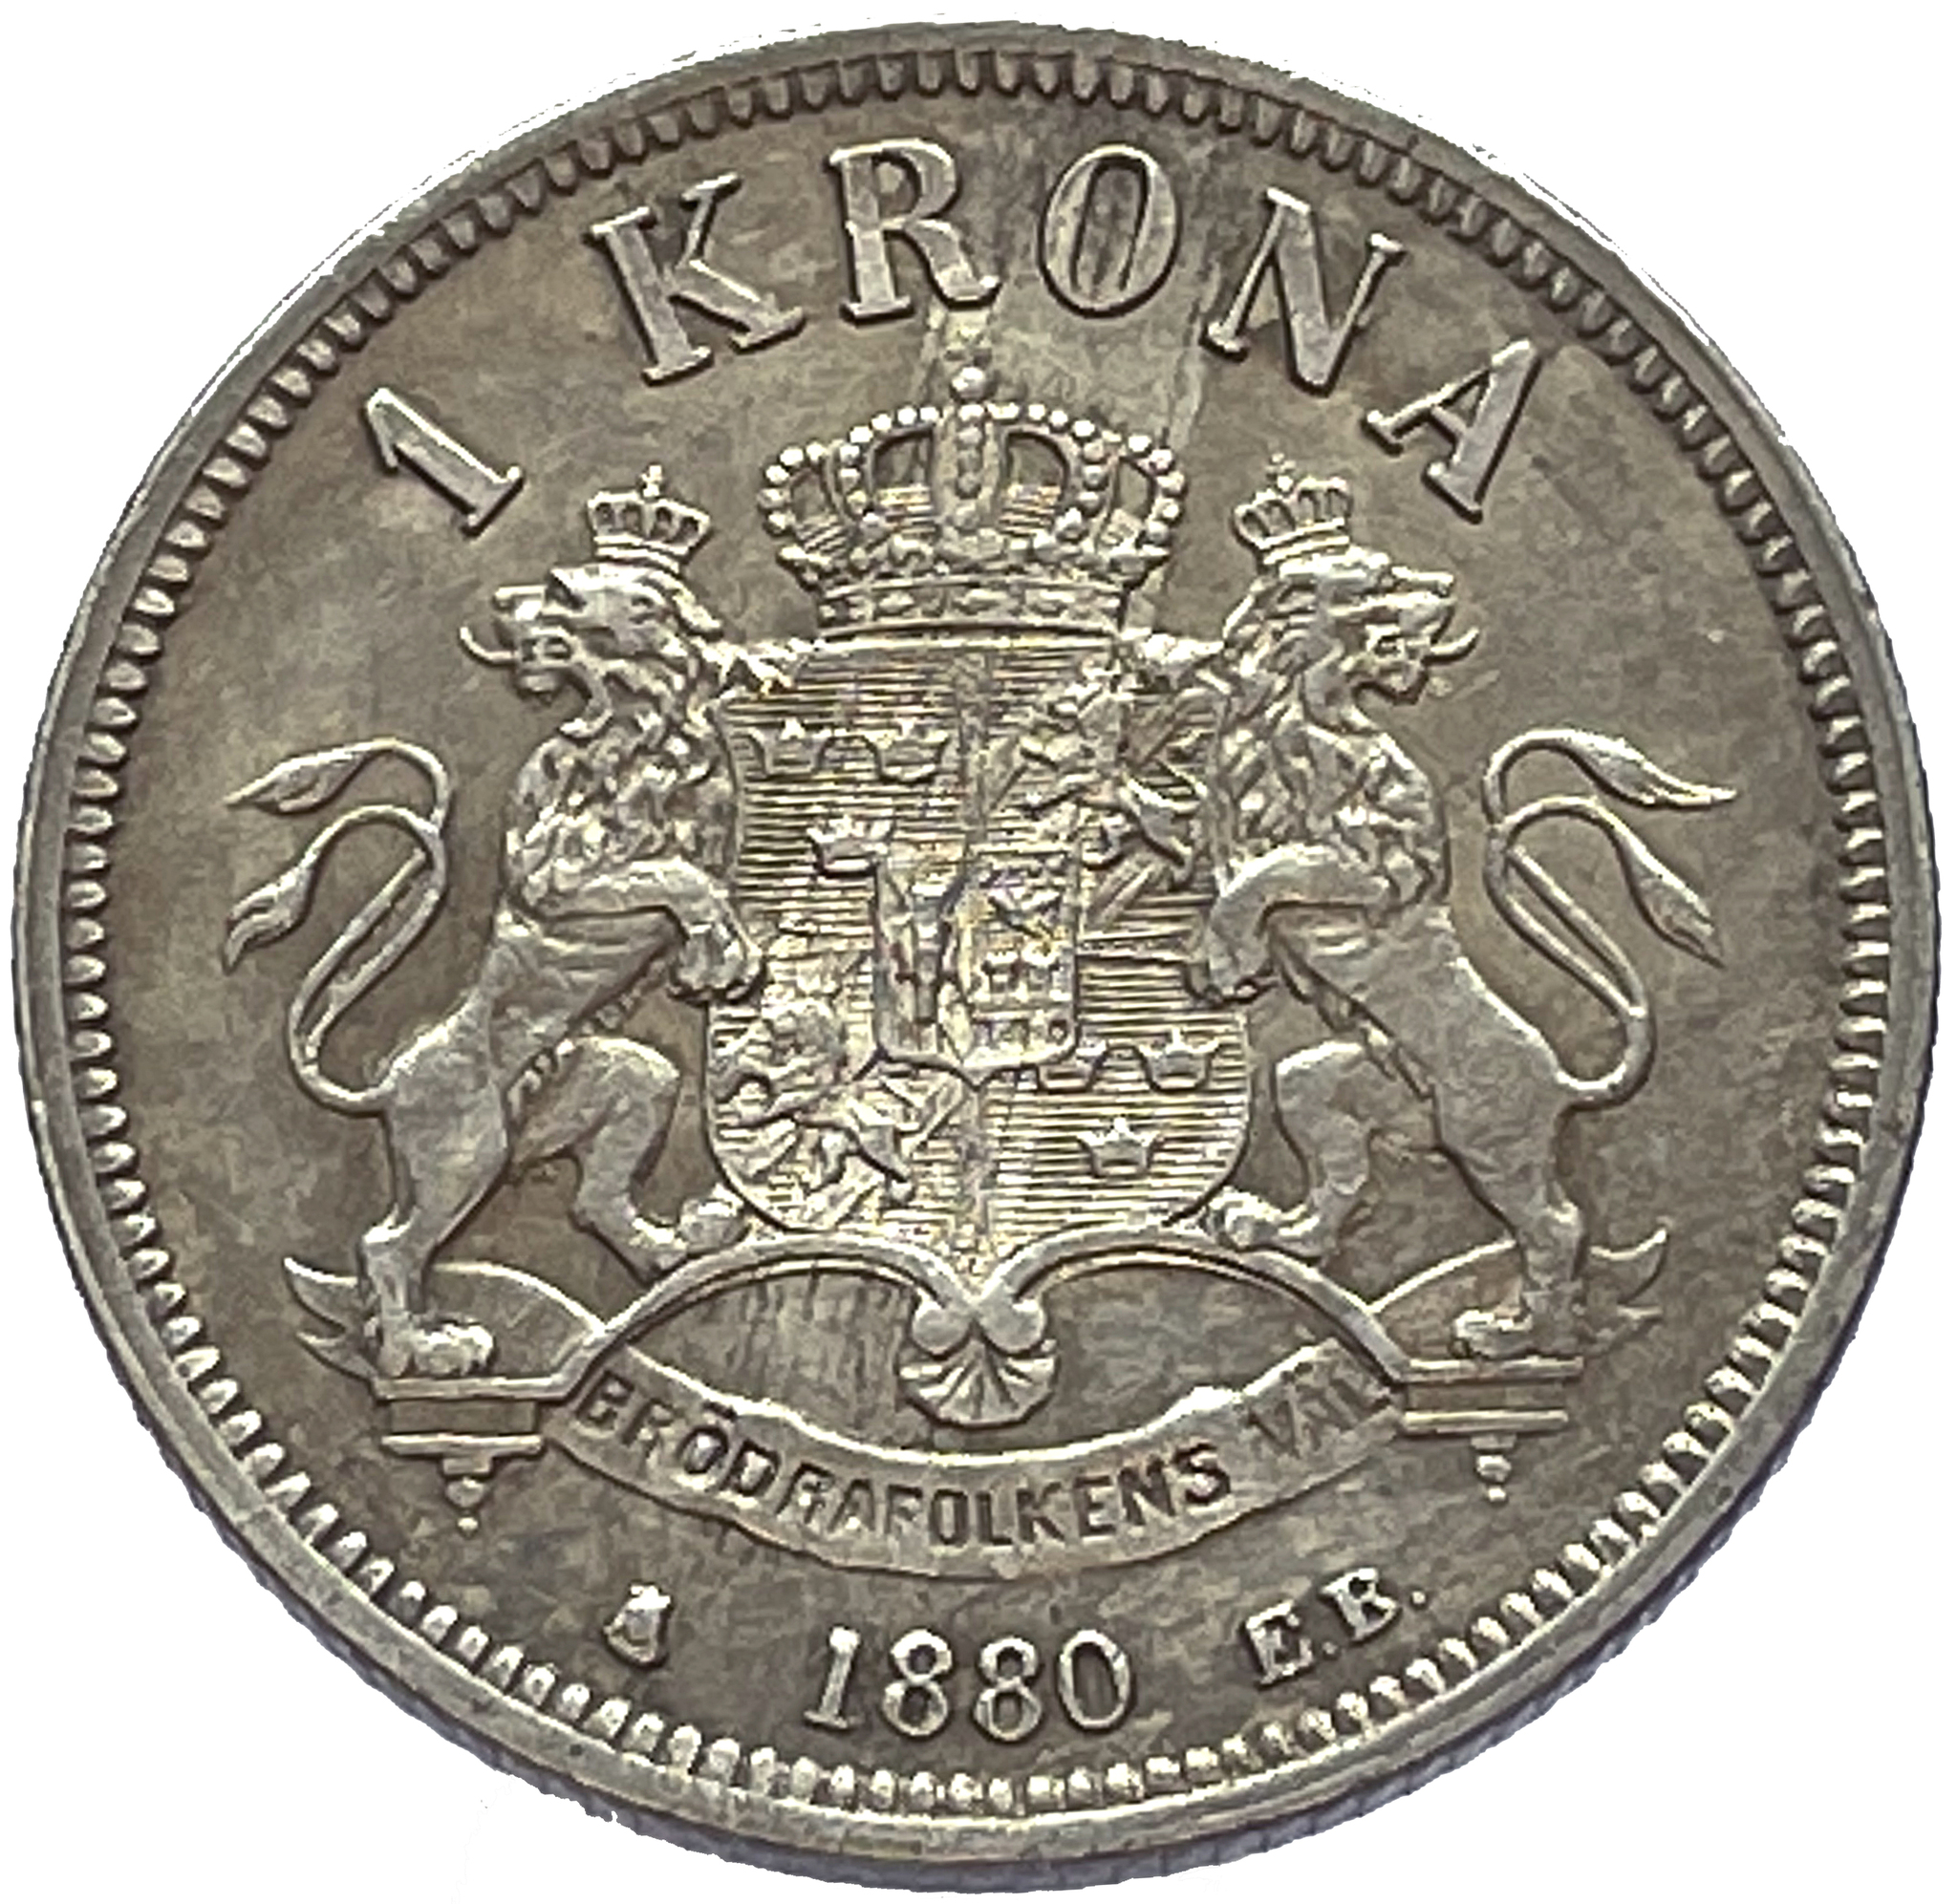 Oskar II, 1 Krona 1880 - 1:a med liten hake